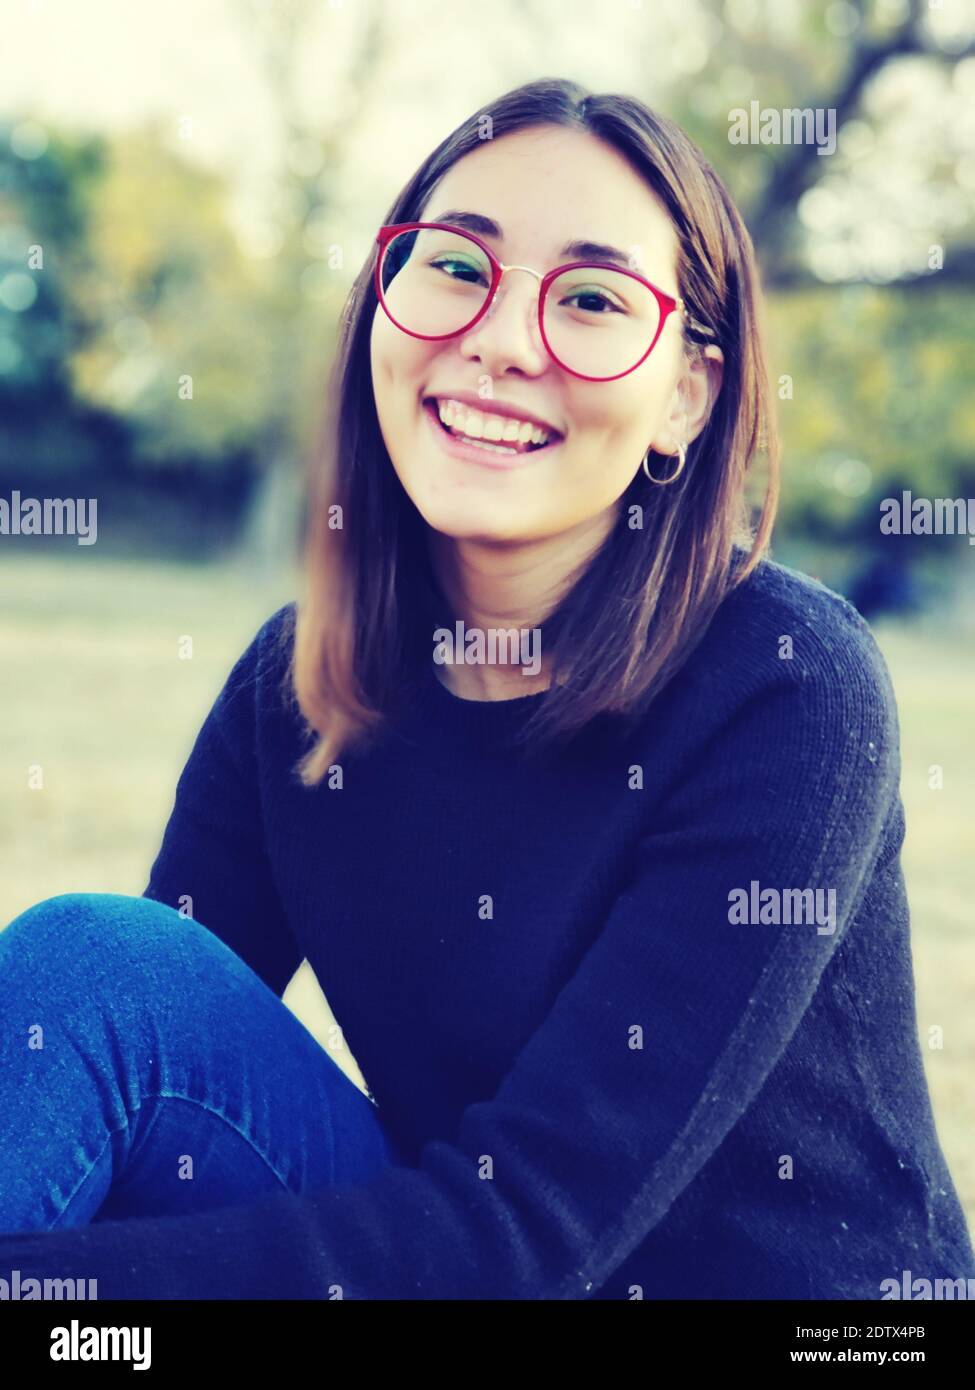 Retrato de mujer sonriente llevar gafas. Foto de stock